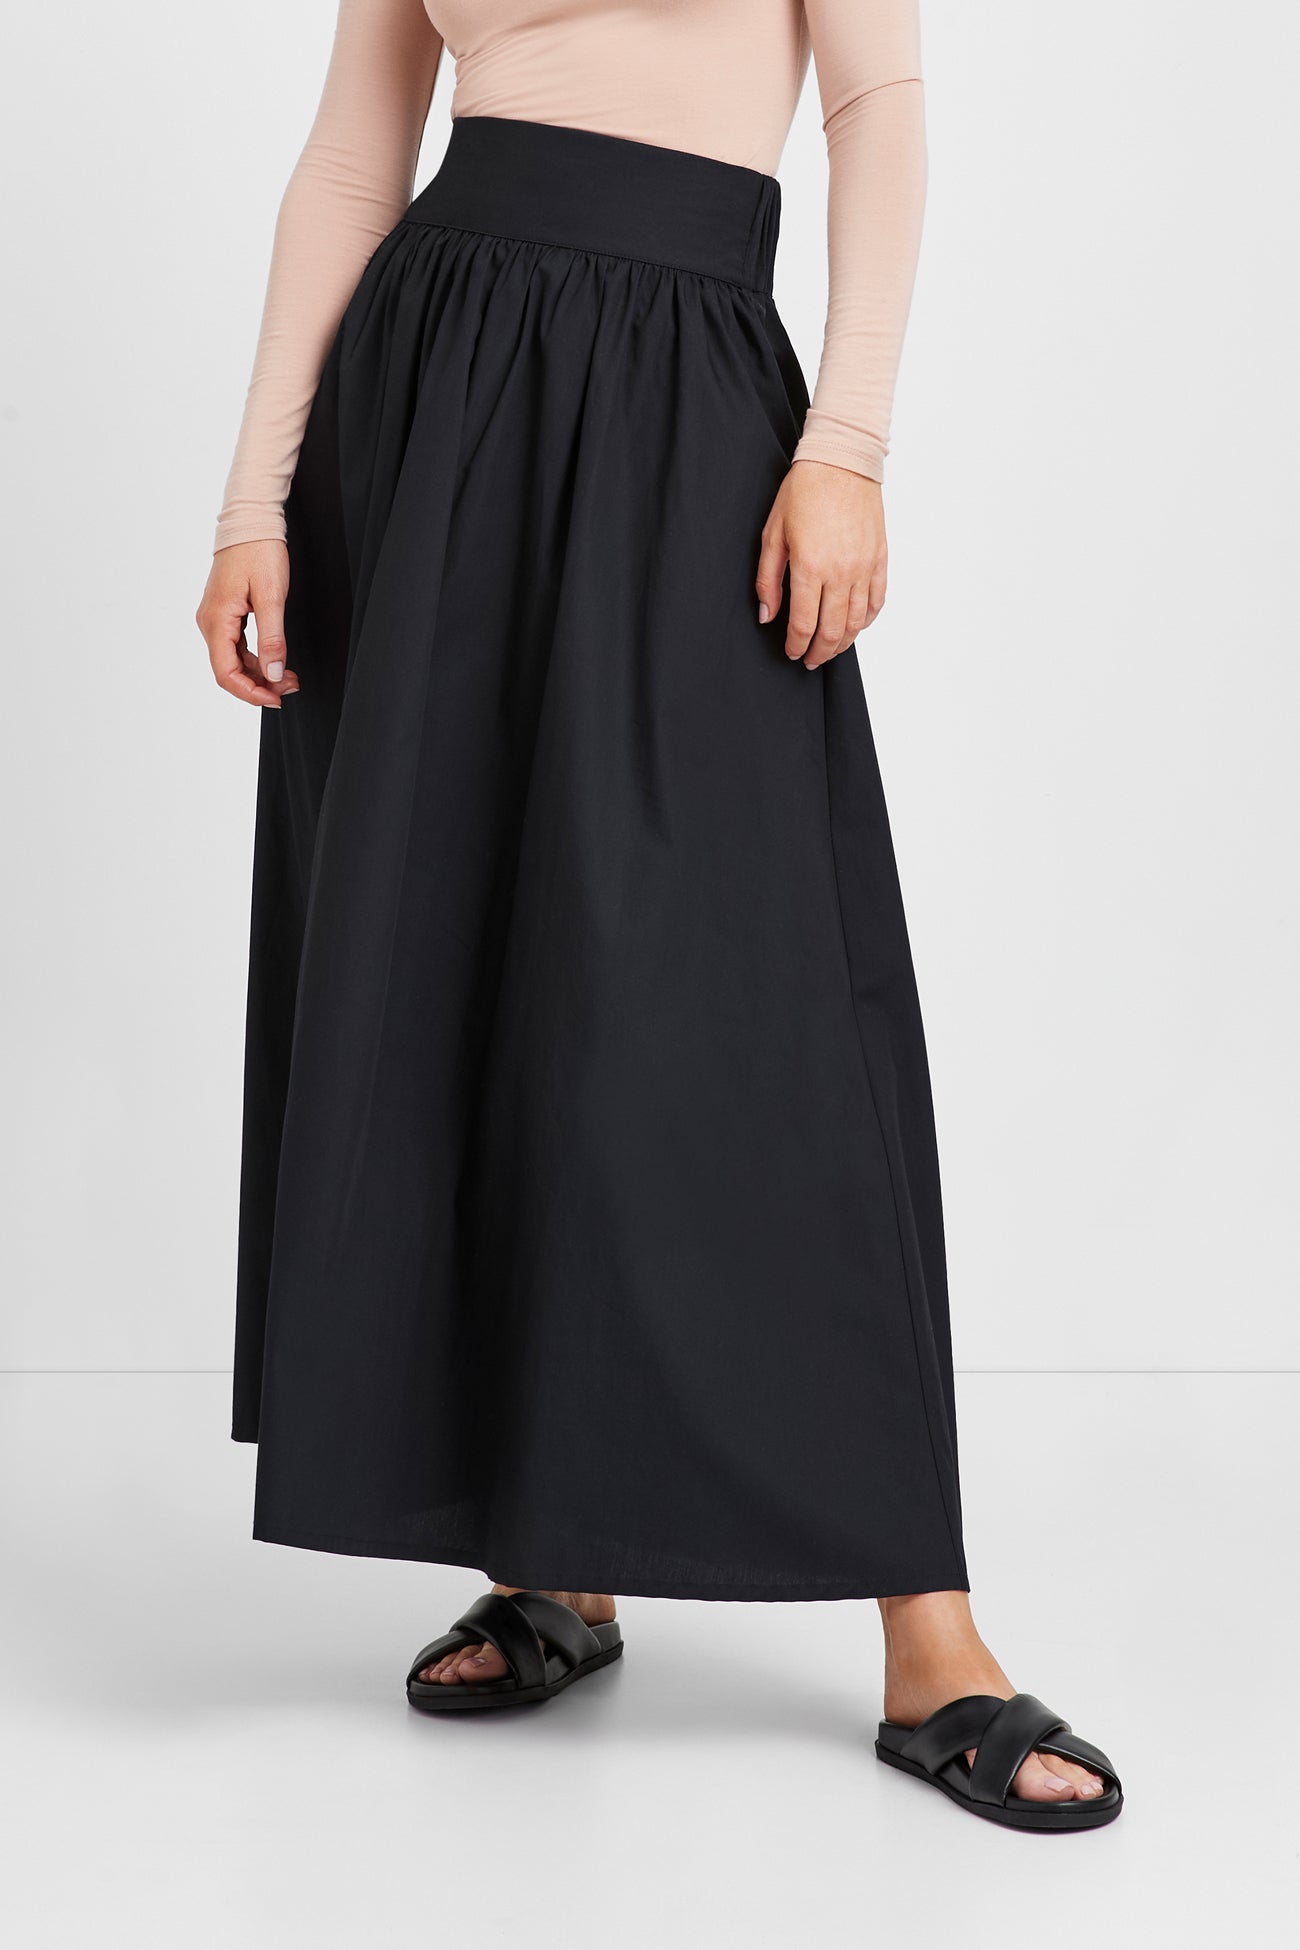 Black High-Waisted Maxi Skirt - Raven Skirt | Marcella